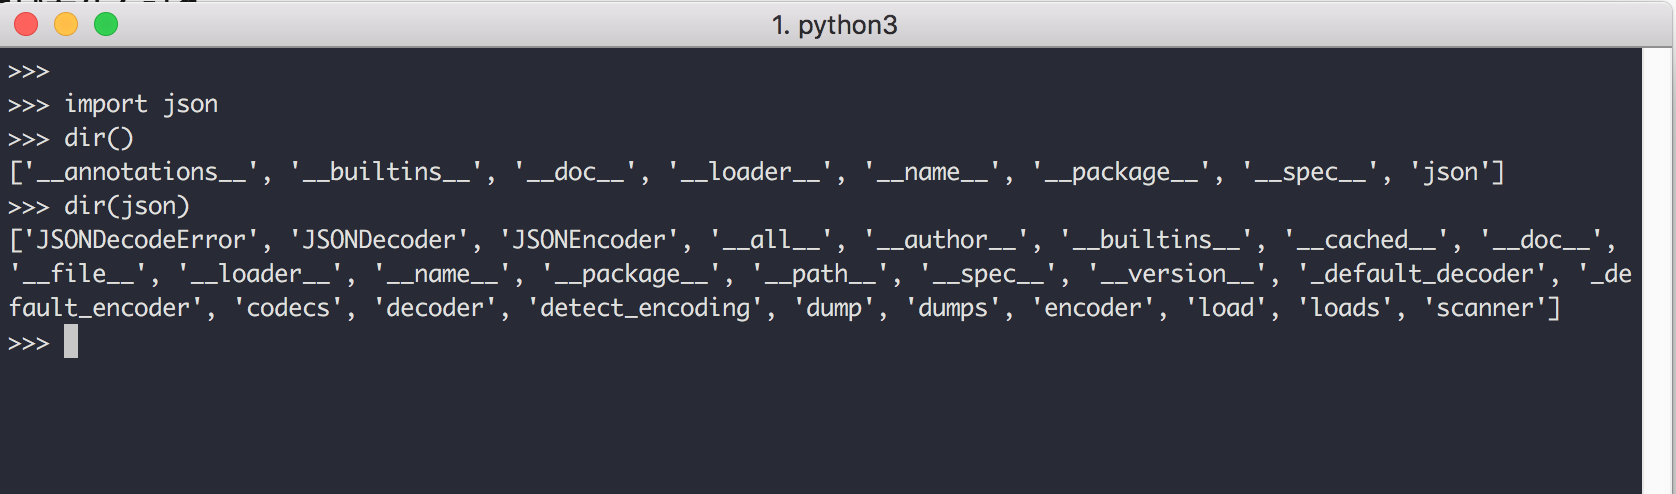 详解 Python 的自省/反射机制